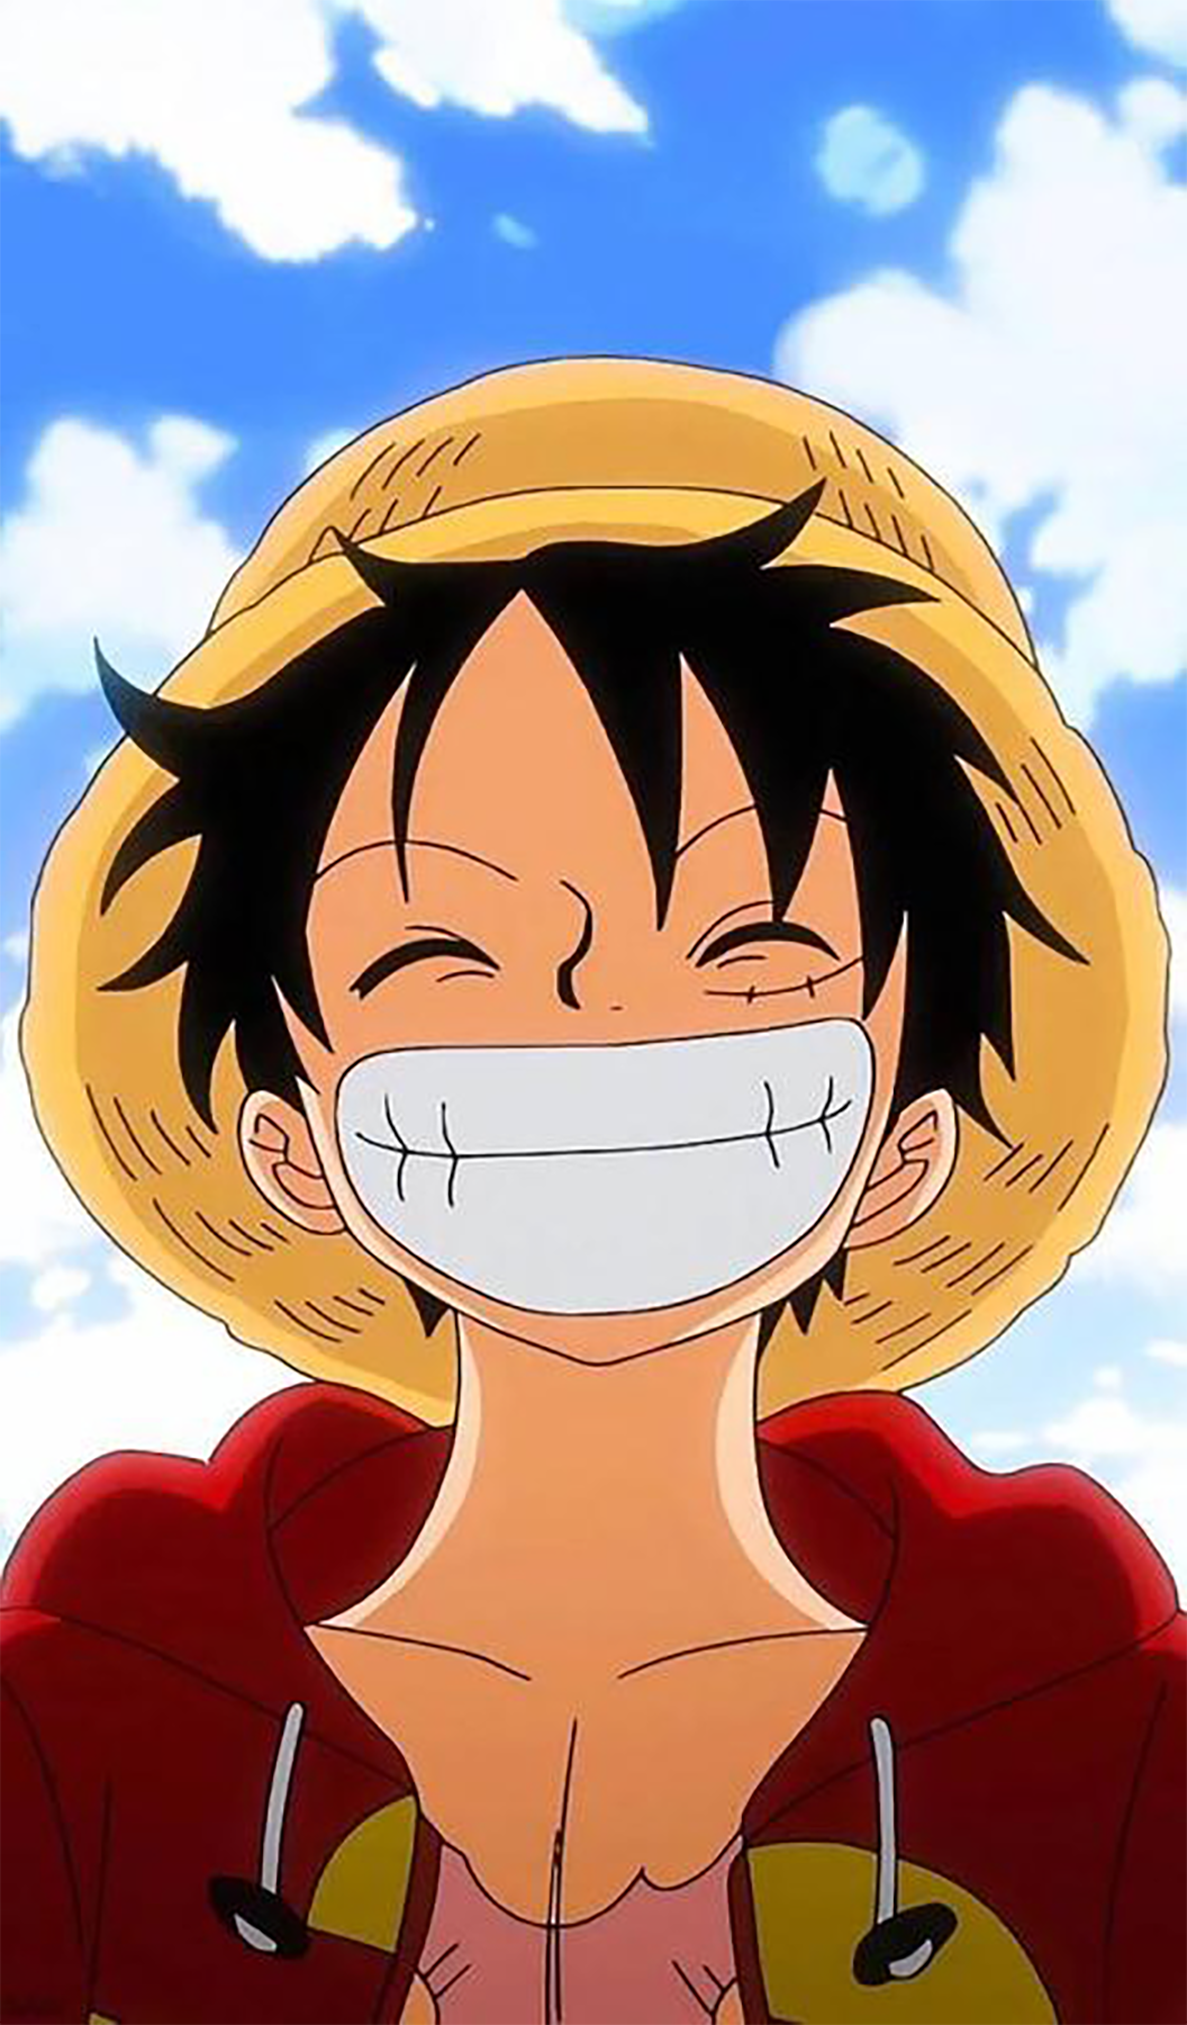 Hình Ảnh Luffy Cute: Luffy được biết đến là một nhân vật vừa mạnh mẽ vừa đáng yêu. Hình ảnh Luffy cute không chỉ gợi nhớ đến trẻ thơ mà còn mang đến cảm giác yêu thương và ấm áp.